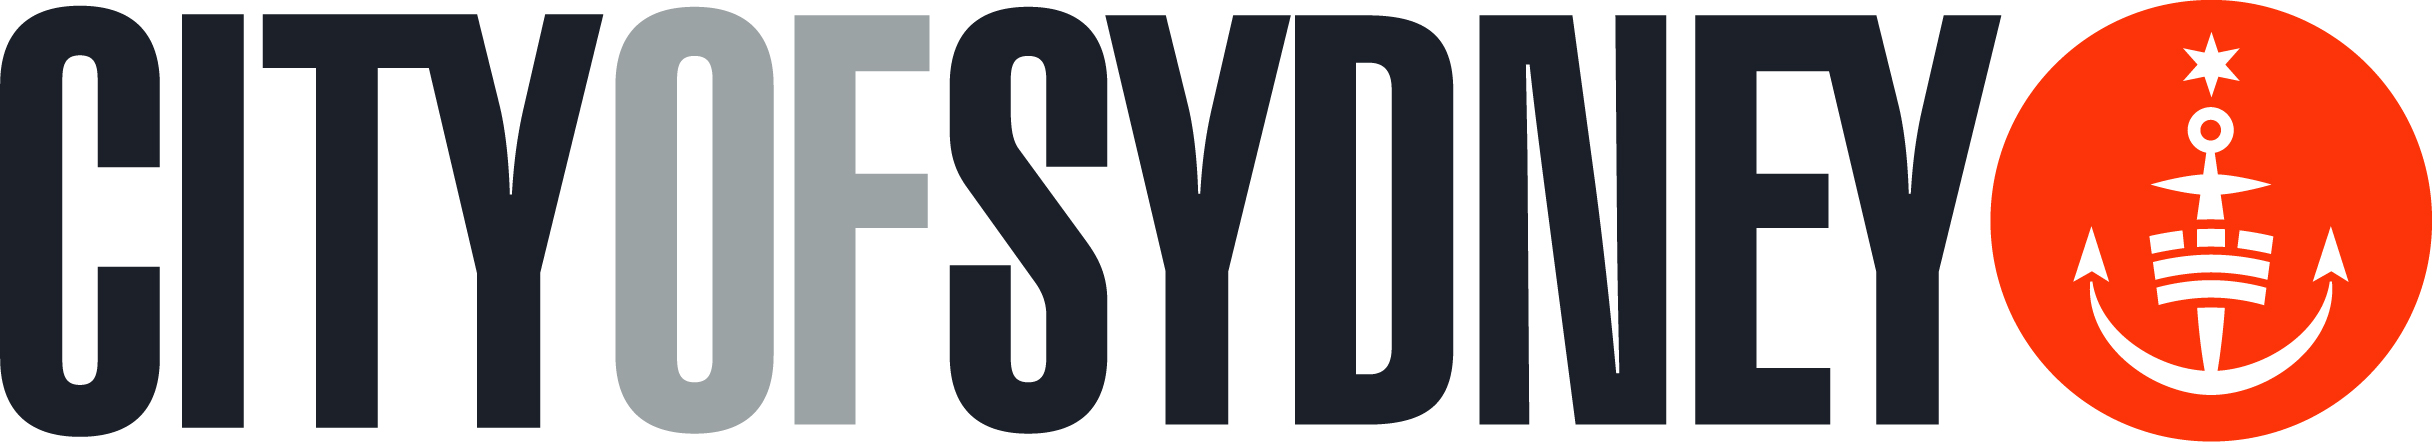 City of Sydney Logo